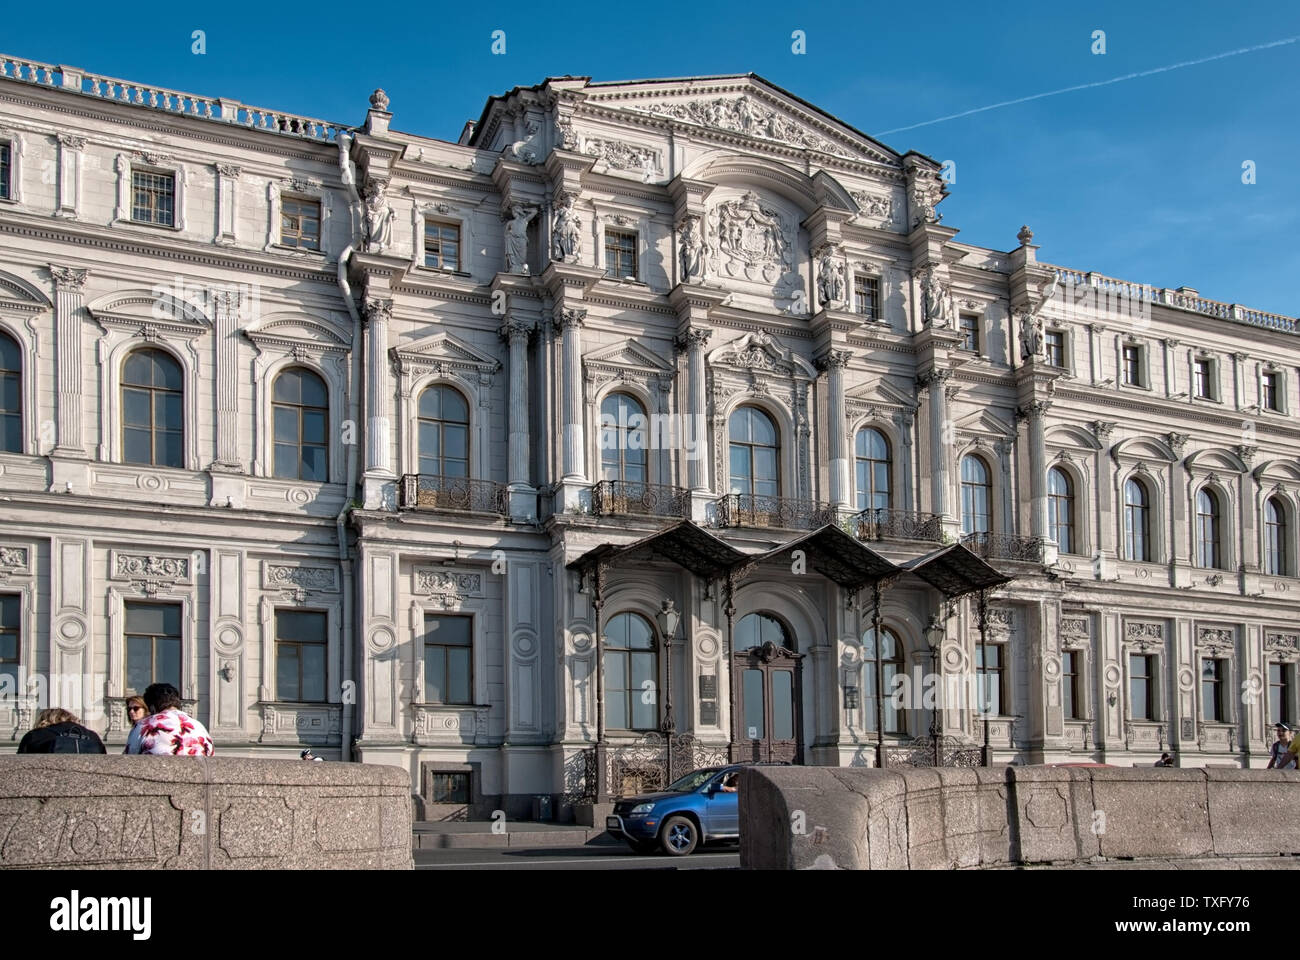 SAINT-Petersburg, Russland - 5. JUNI 2019: Das Institut für Orientalische Handschriften der Russischen Akademie der Wissenschaften, auf den Palast Damm Stockfoto